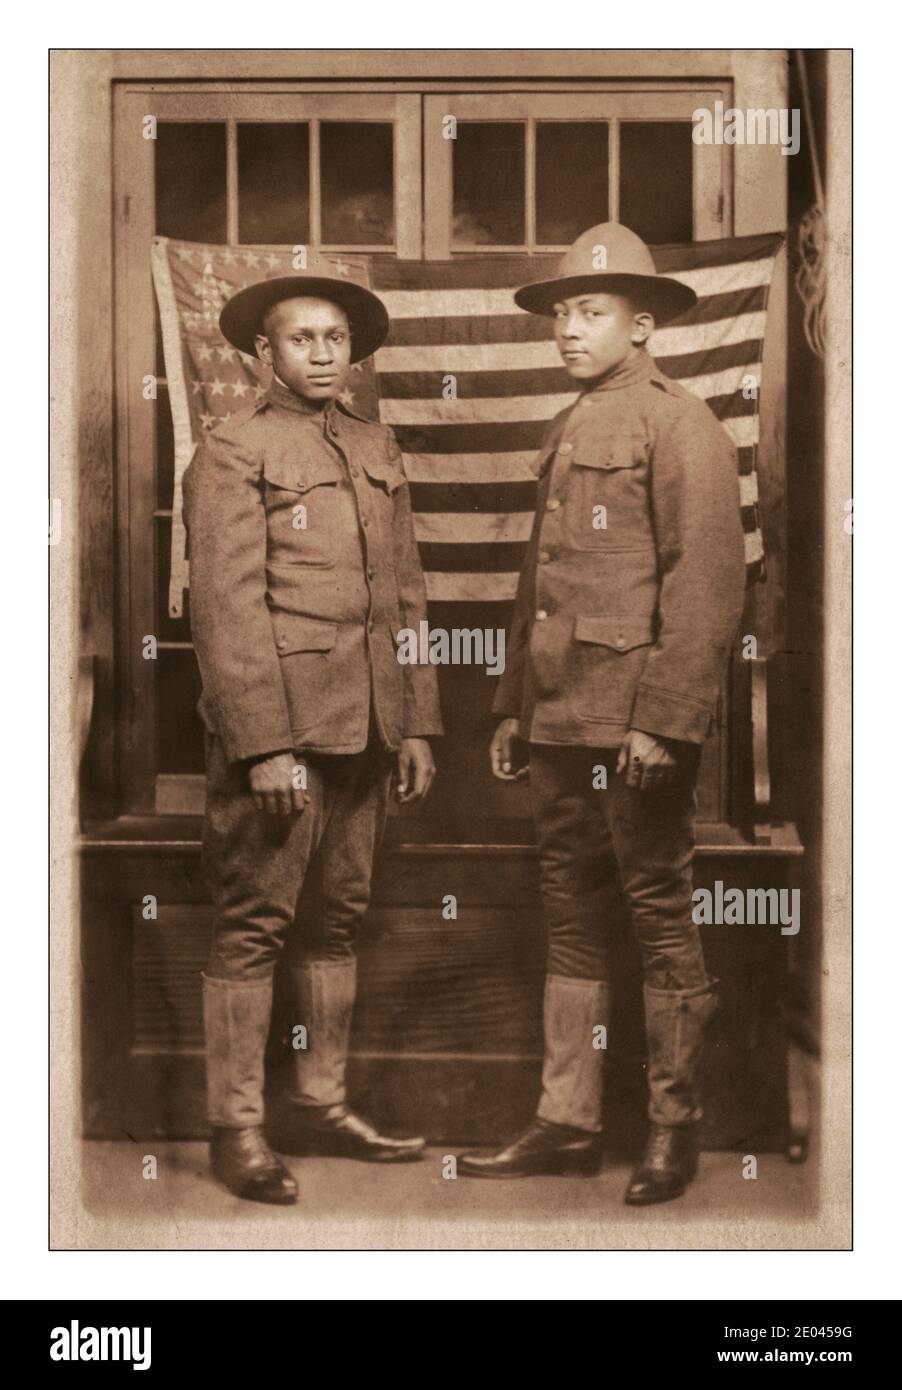 La propagande de la première Guerre mondiale photo montrant la contribution des Afro-Américains noirs à la première Guerre mondiale. Deux soldats Afro-américains non identifiés en uniformes et en chapeaux de campagne debout devant le drapeau américain WW1 1918 [entre 1917 et 1918]. États-Unis.--Armée--personnes--1910 à 1920 Guerre mondiale, 1914-1918--personnel militaire--Américains africains--Service militaire--1910 à 1920 - soldats--Américains-1910 à 1920 uniformes militaires--Américains-1910 à 1920 drapeaux--Américains-1910 à 1920 portraits de groupe--1910-1920. Cartes postales photographiques--1910-1920. Tirages photographiques--1910-1920. Portraits Banque D'Images